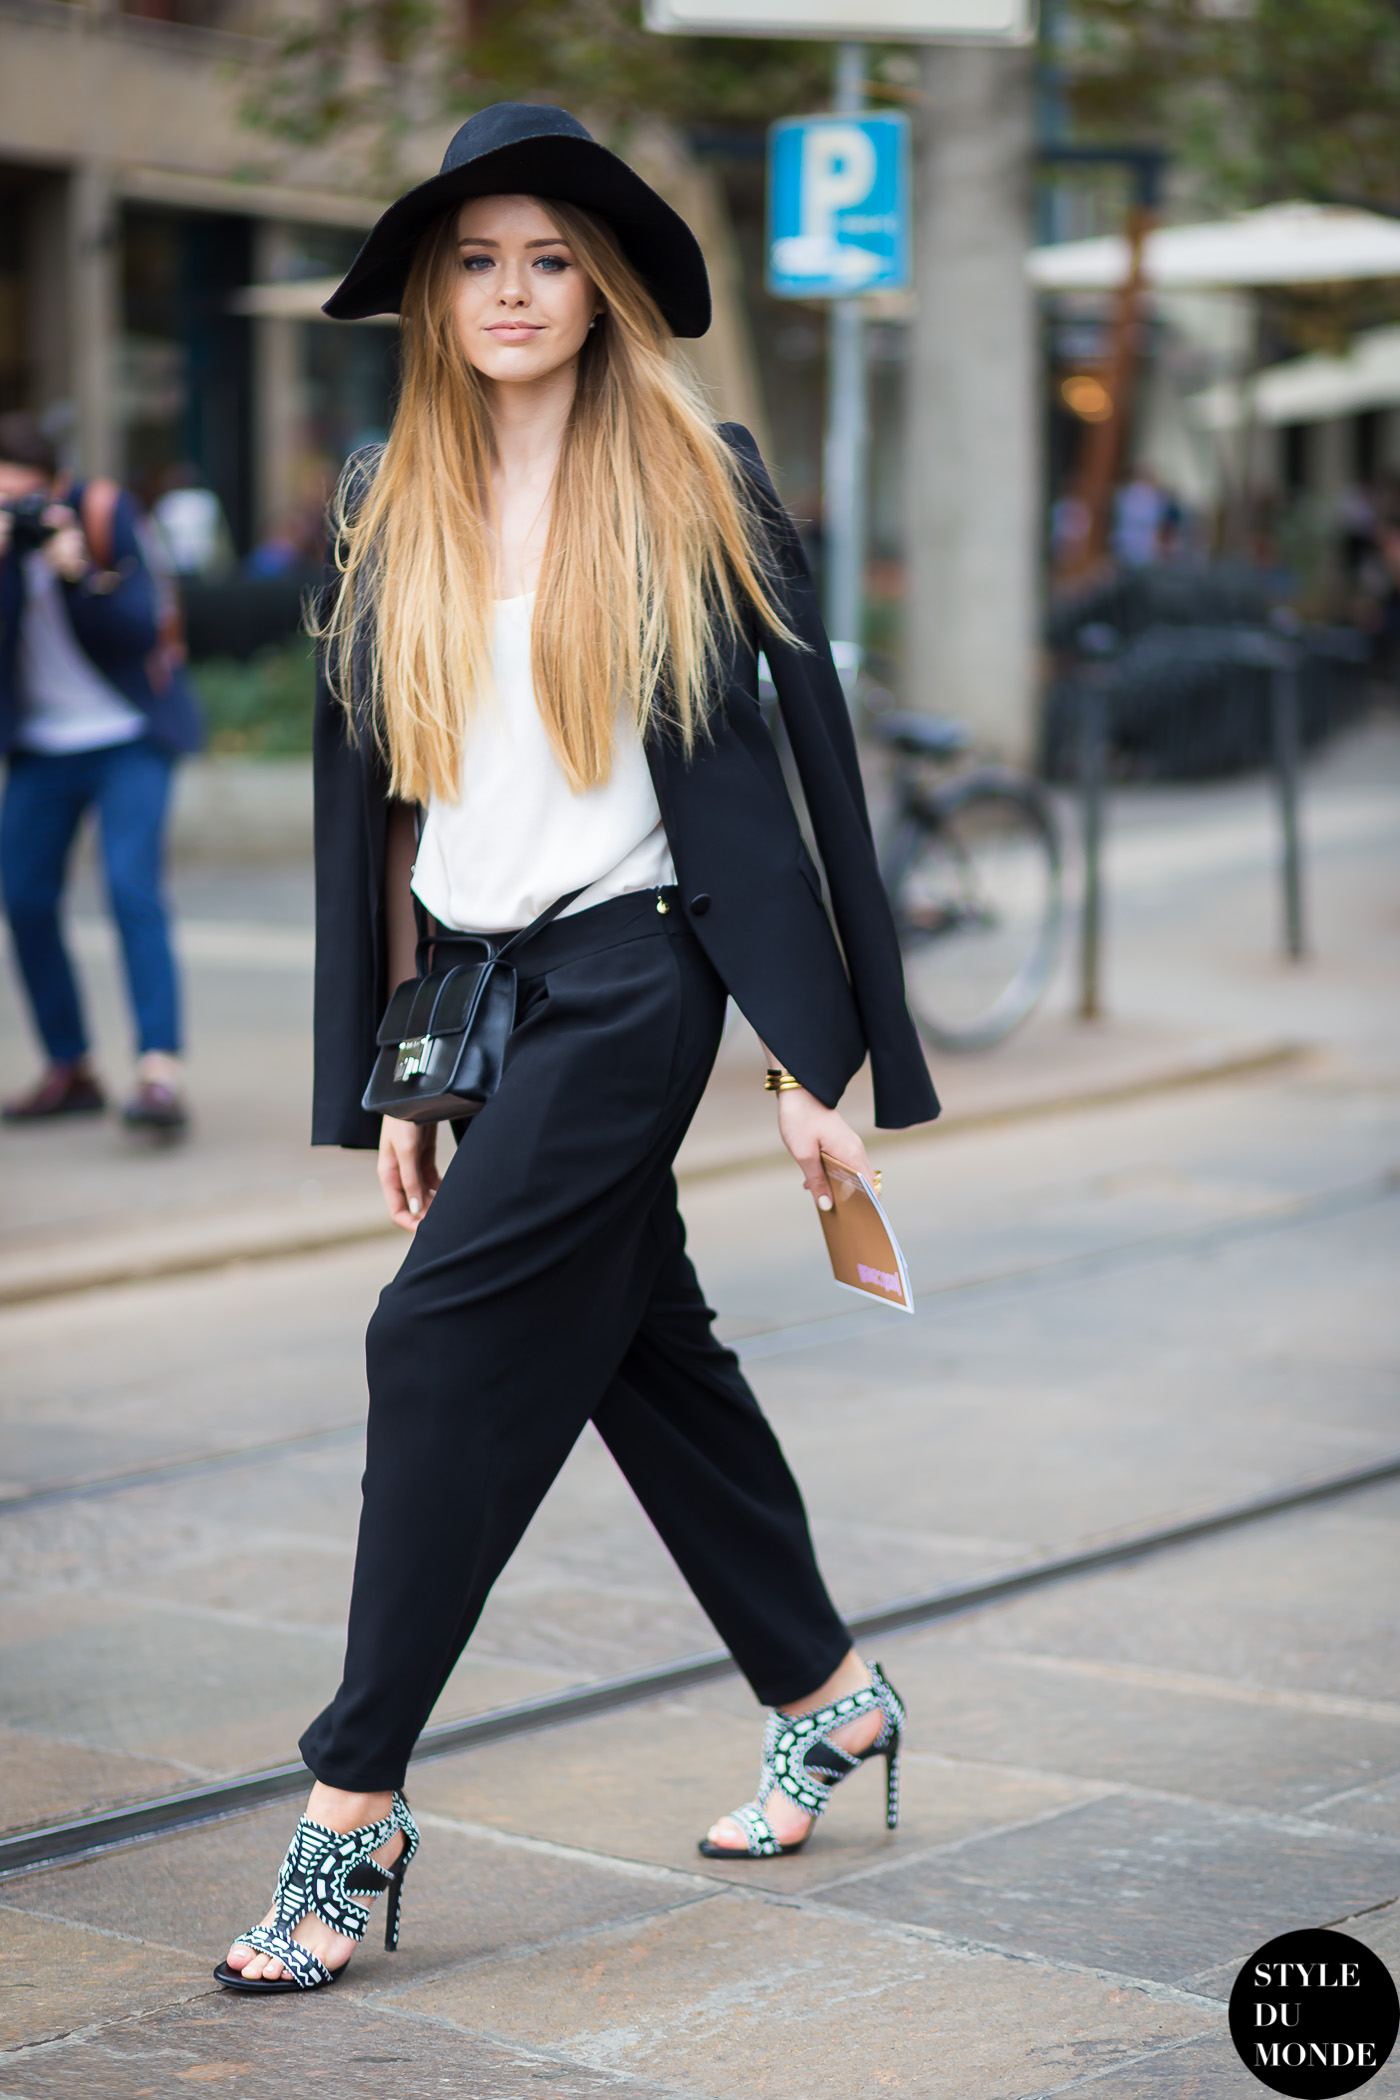 Kristina Bazan - STYLE DU MONDE | Street Style Street Fashion Photos